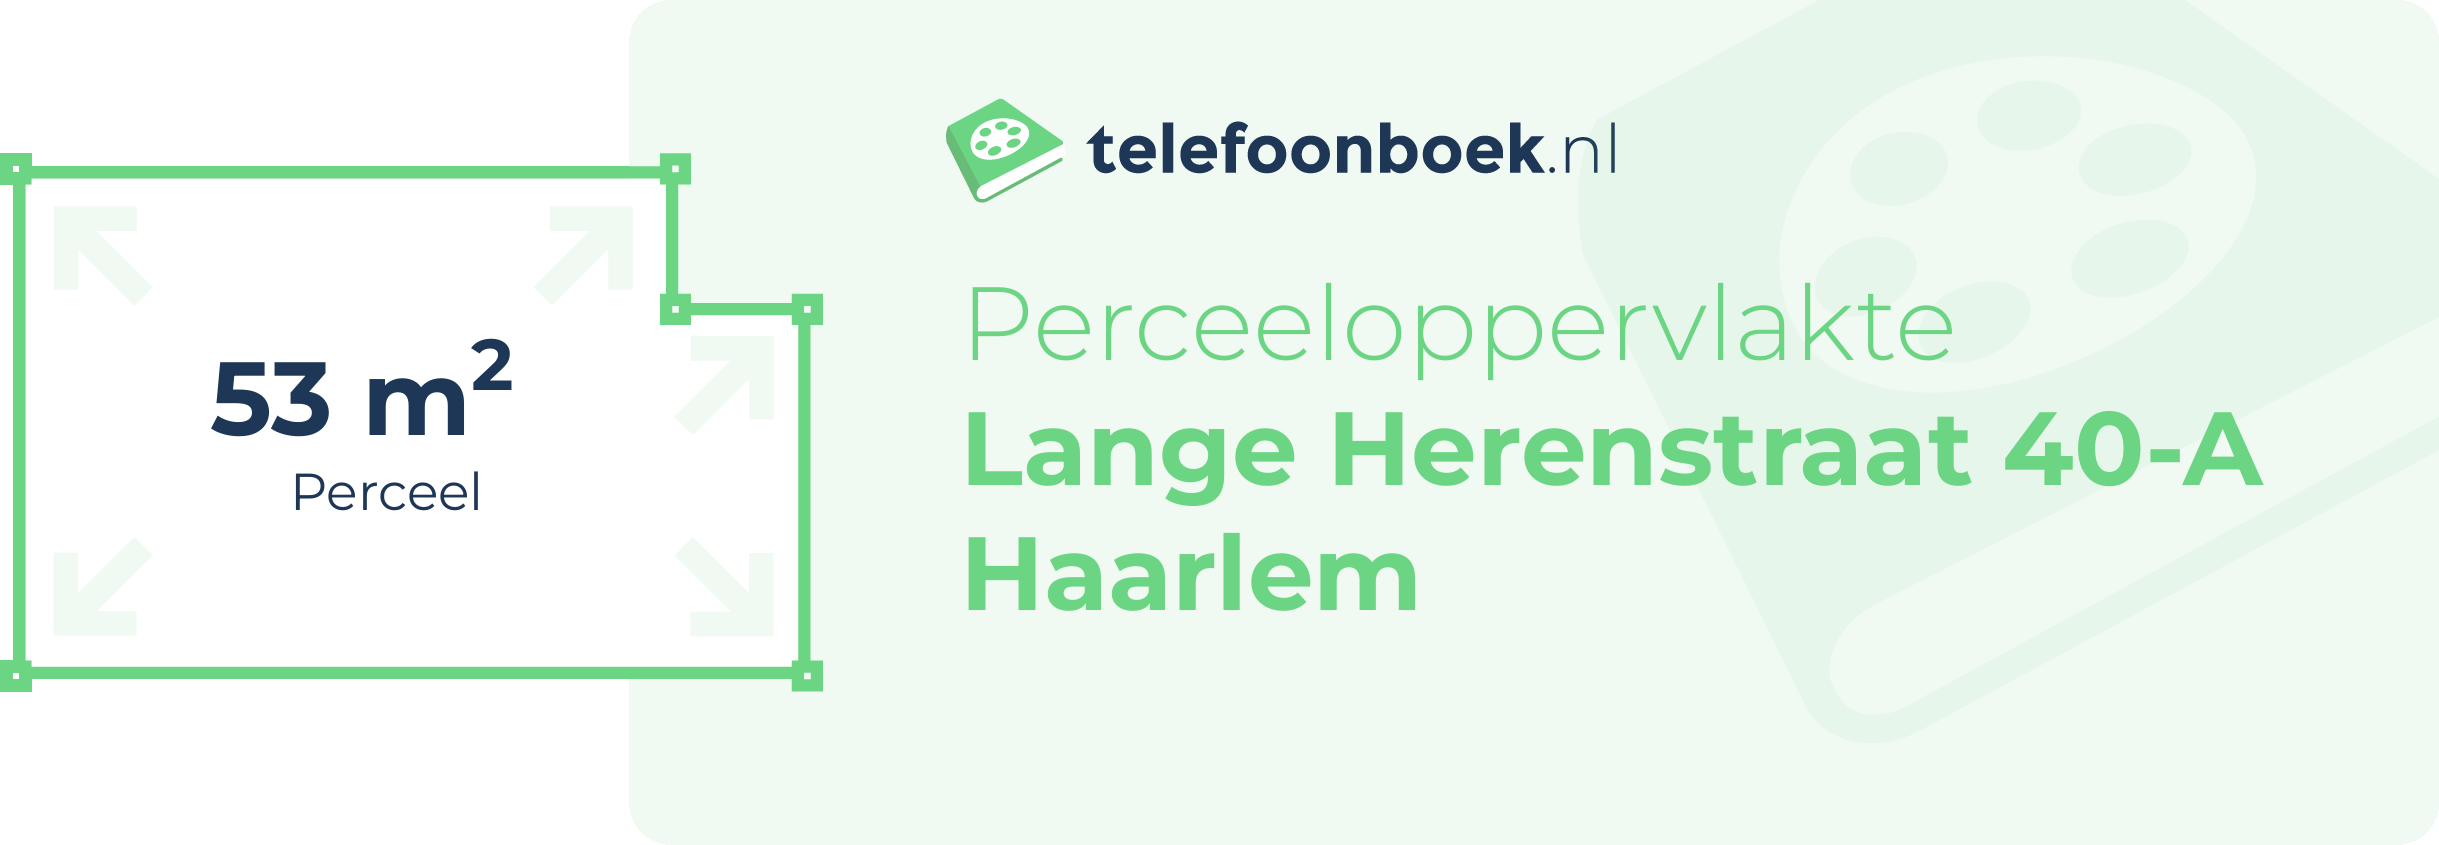 Perceeloppervlakte Lange Herenstraat 40-A Haarlem